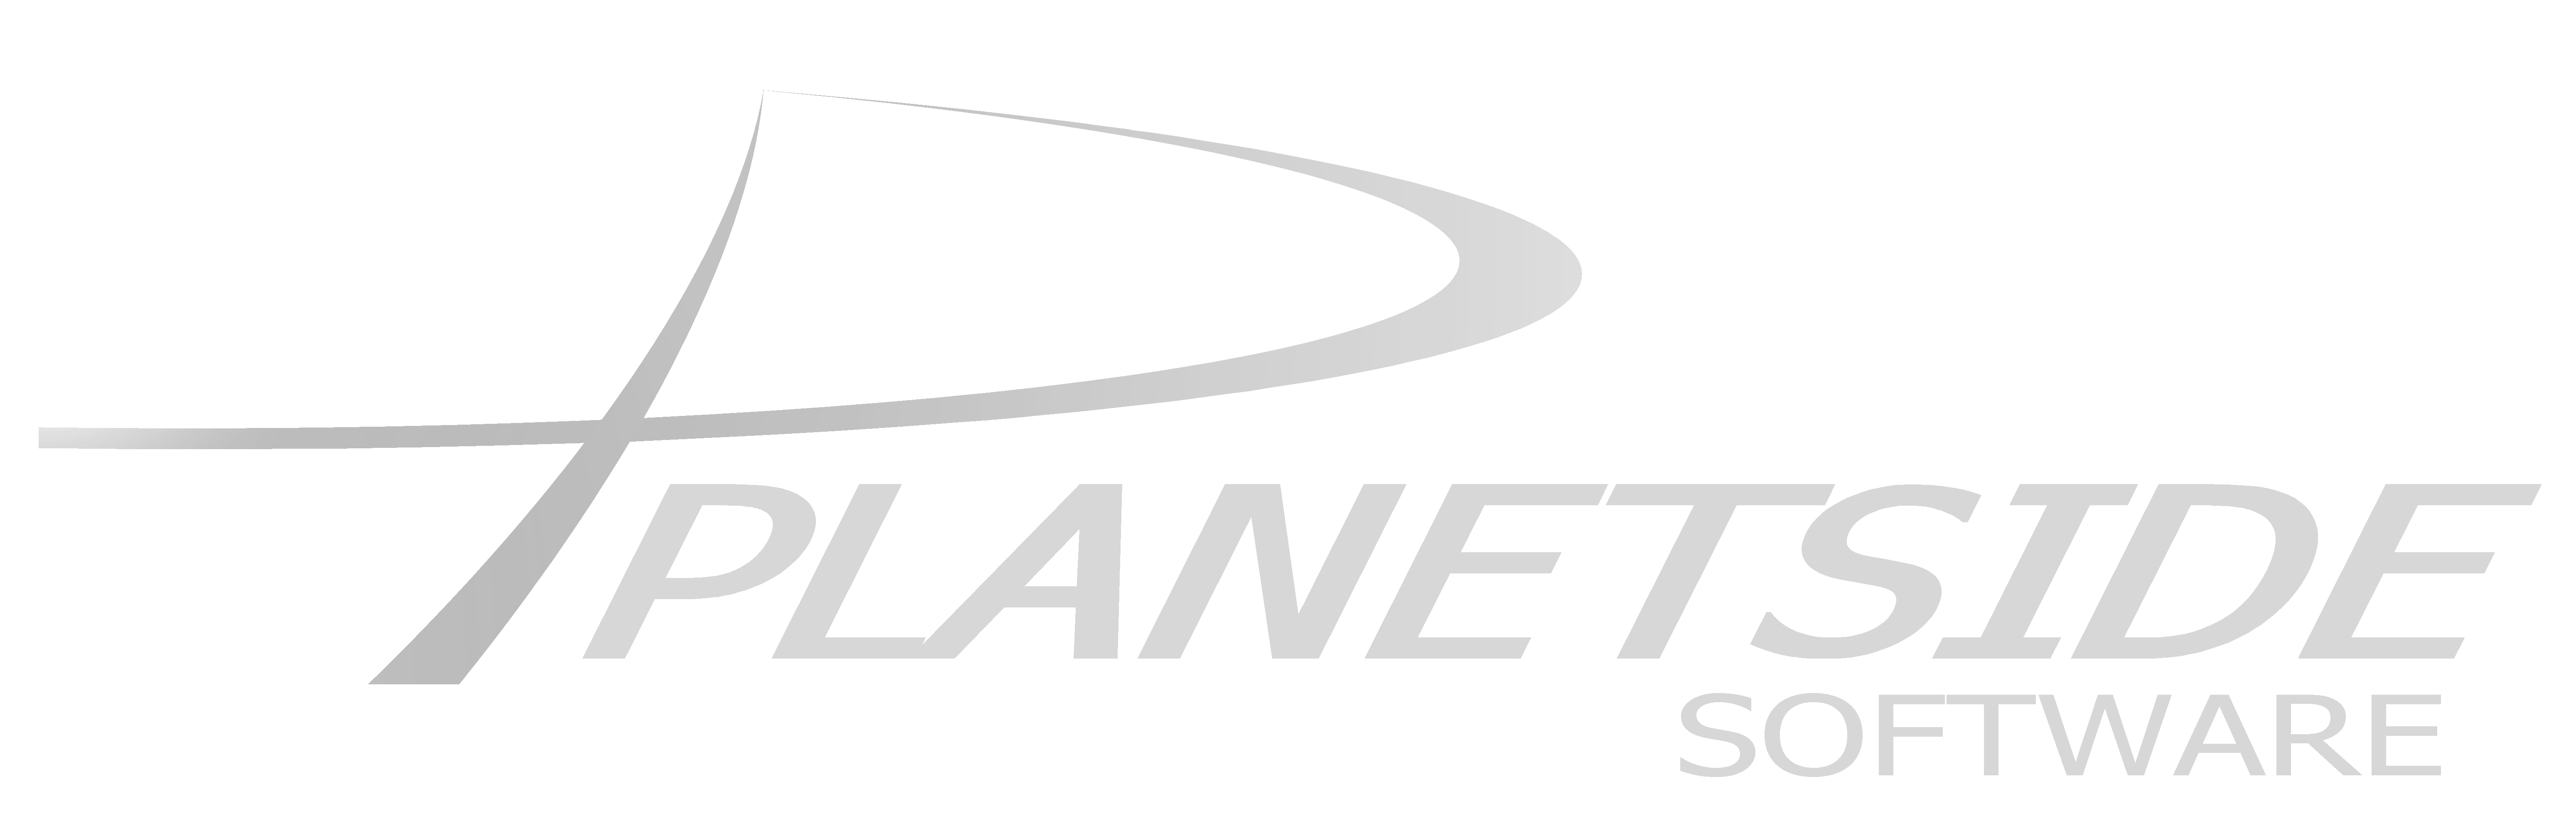 planetside_logo_15b_silver_transp